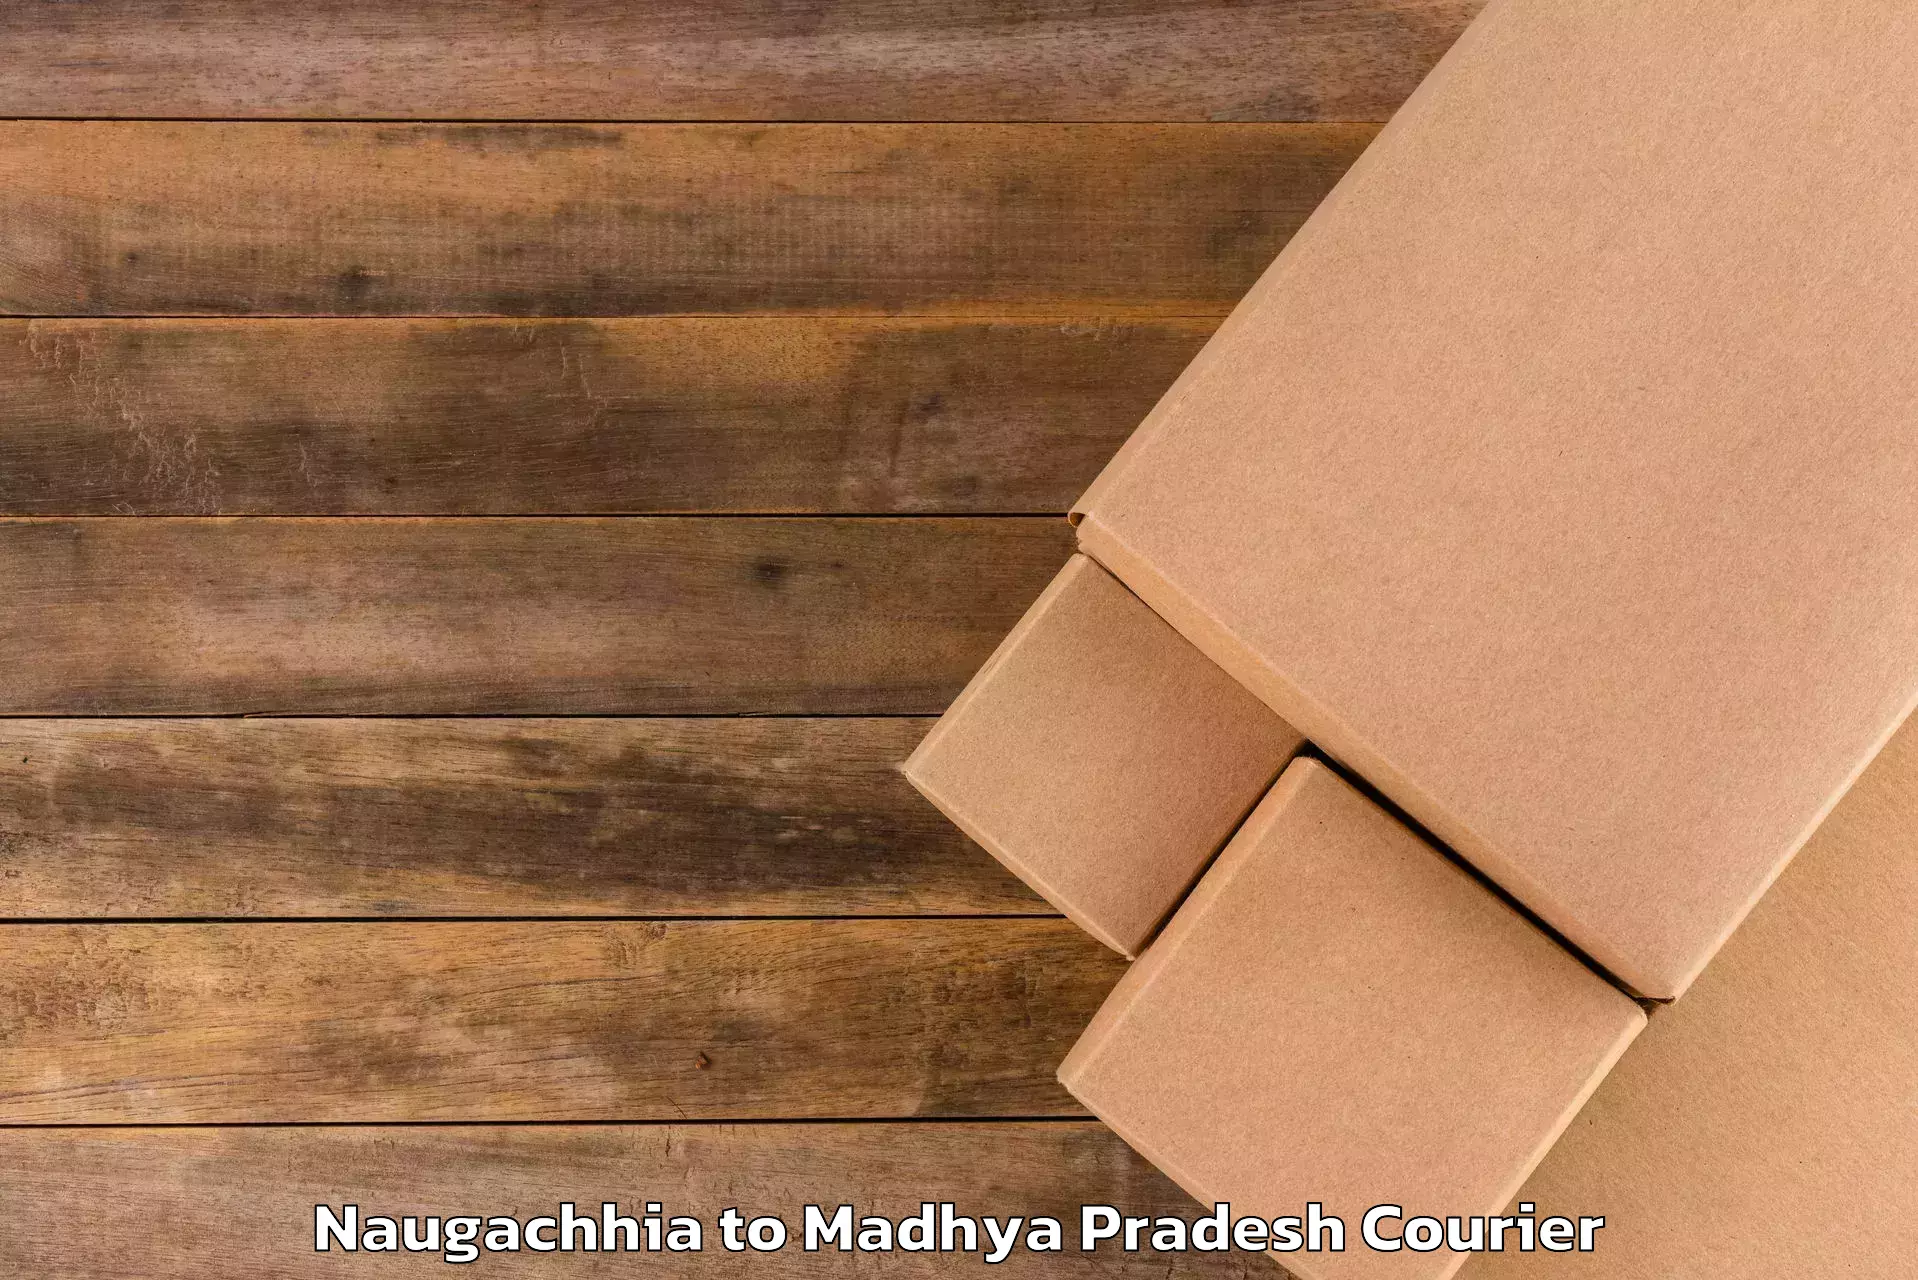 Luggage transport solutions Naugachhia to Budaganj